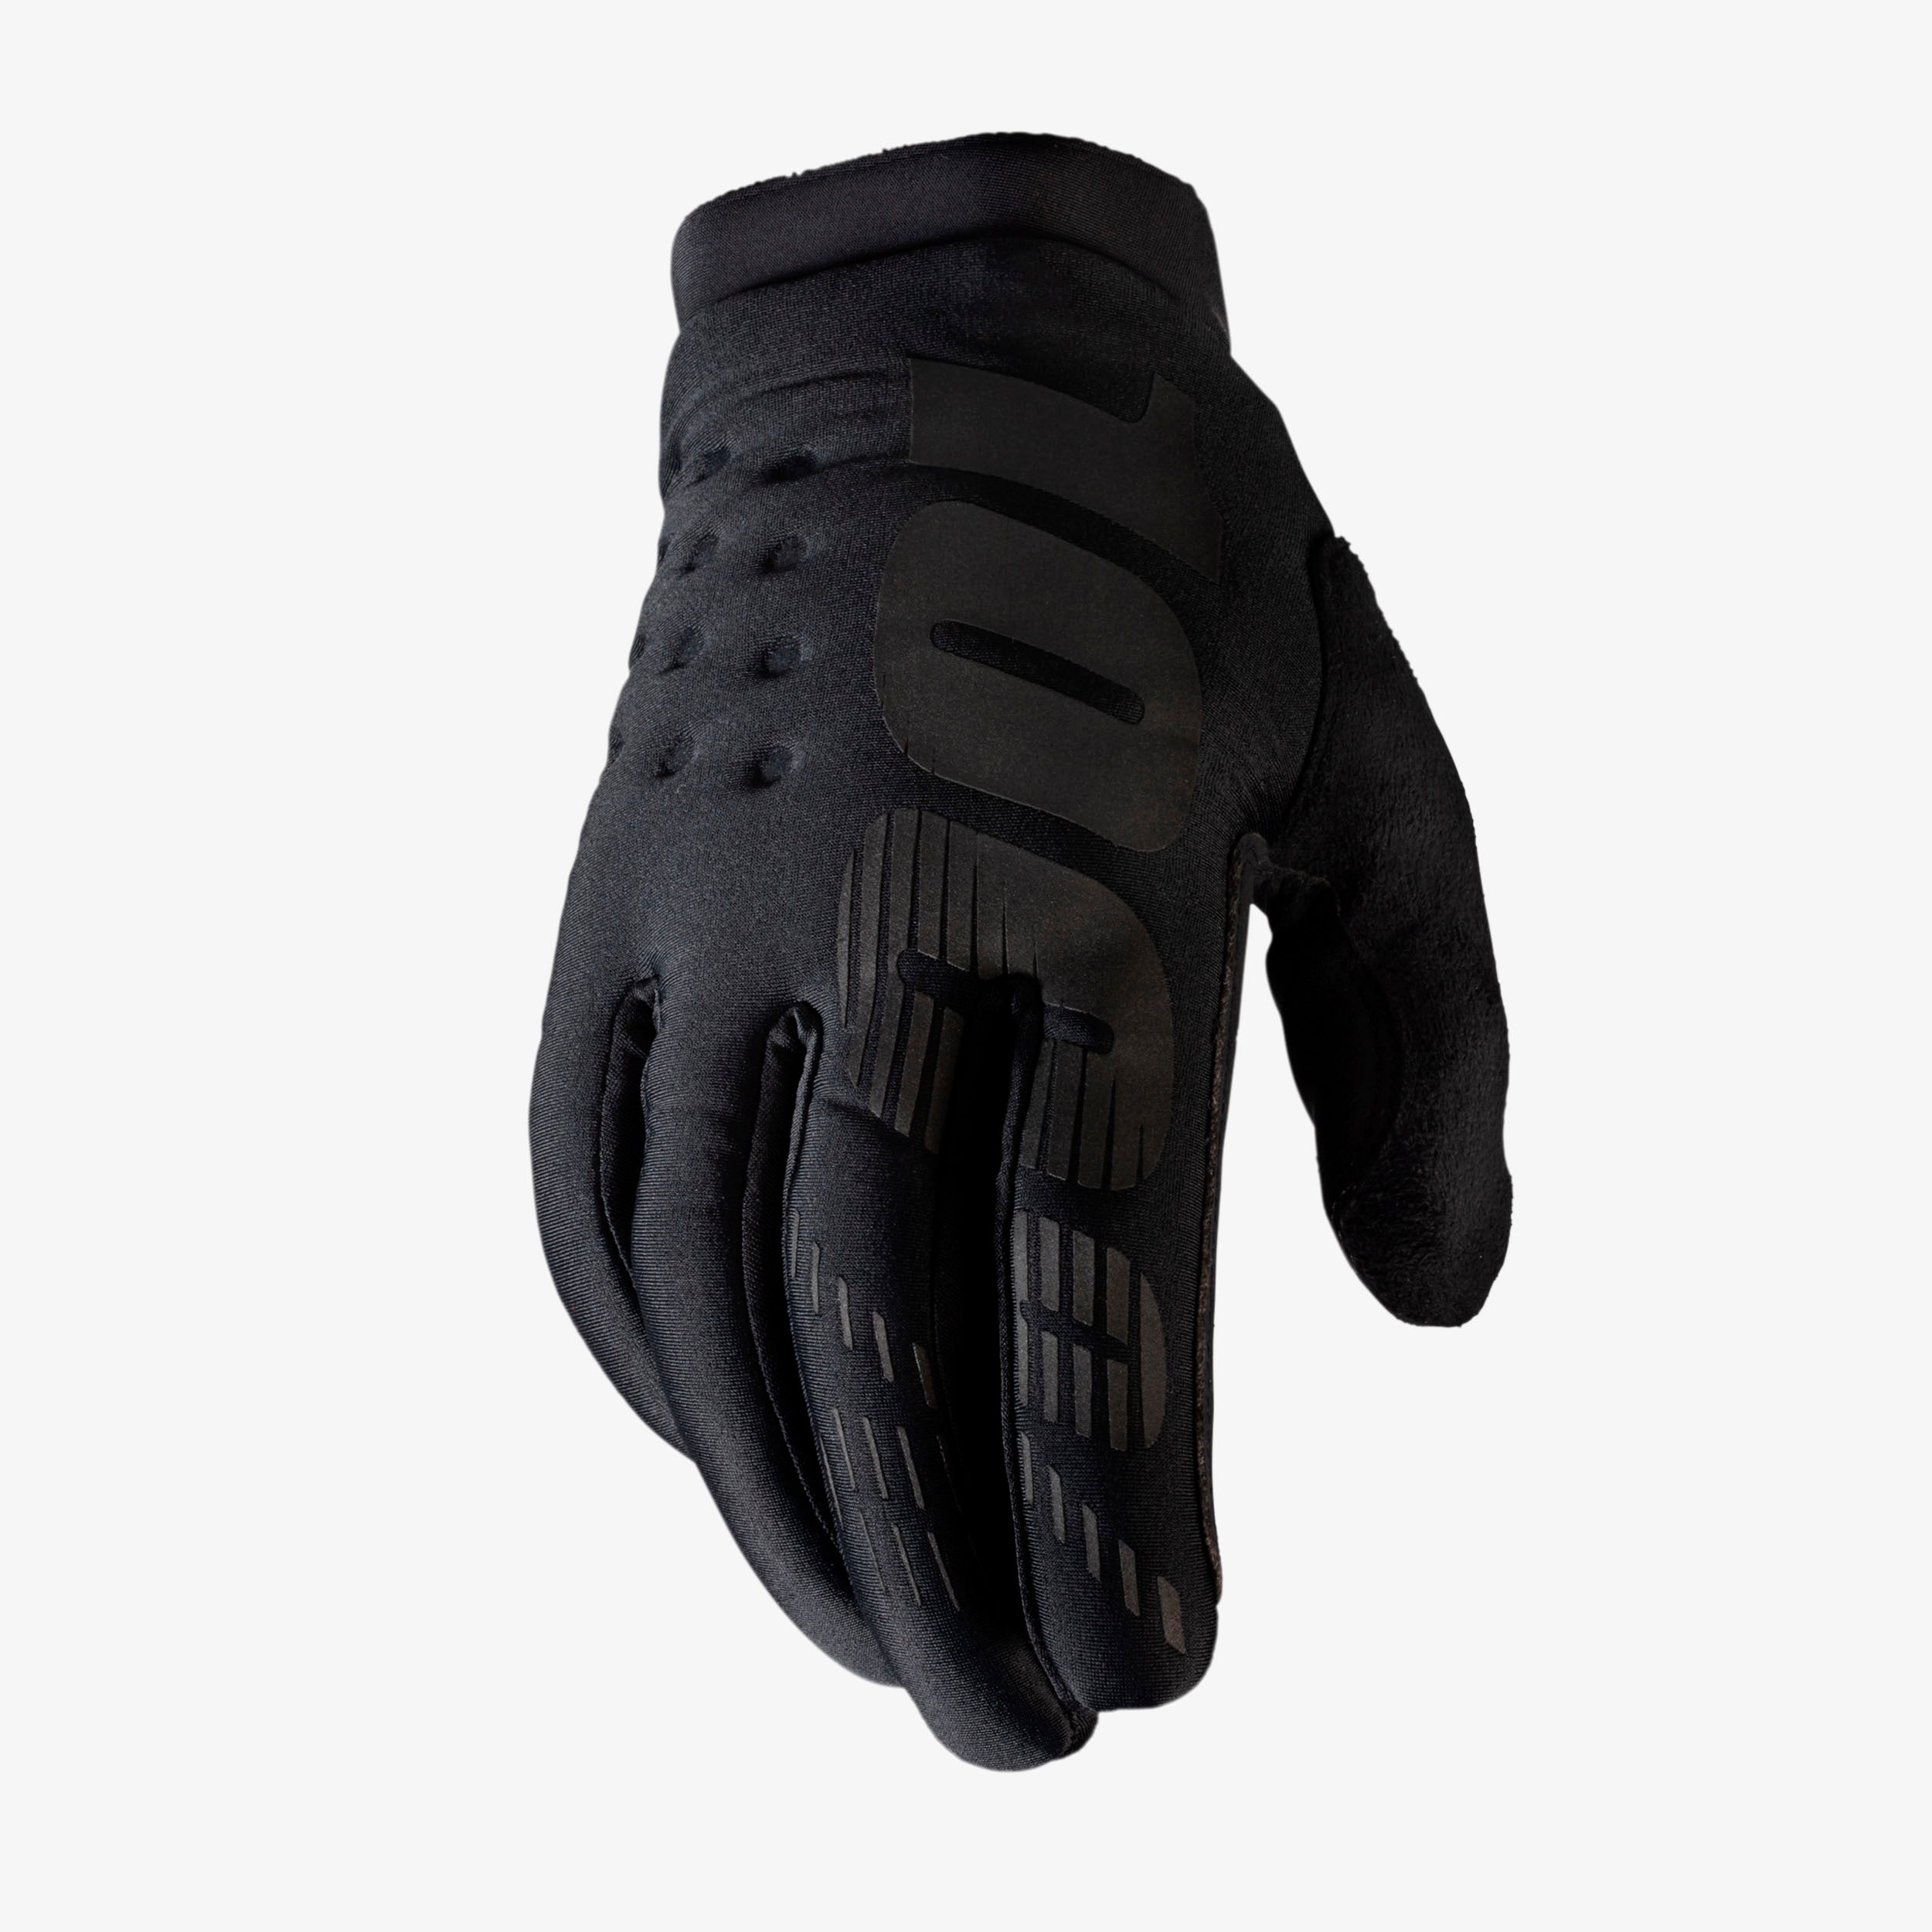 BRISKER Youth Glove - Black/Black